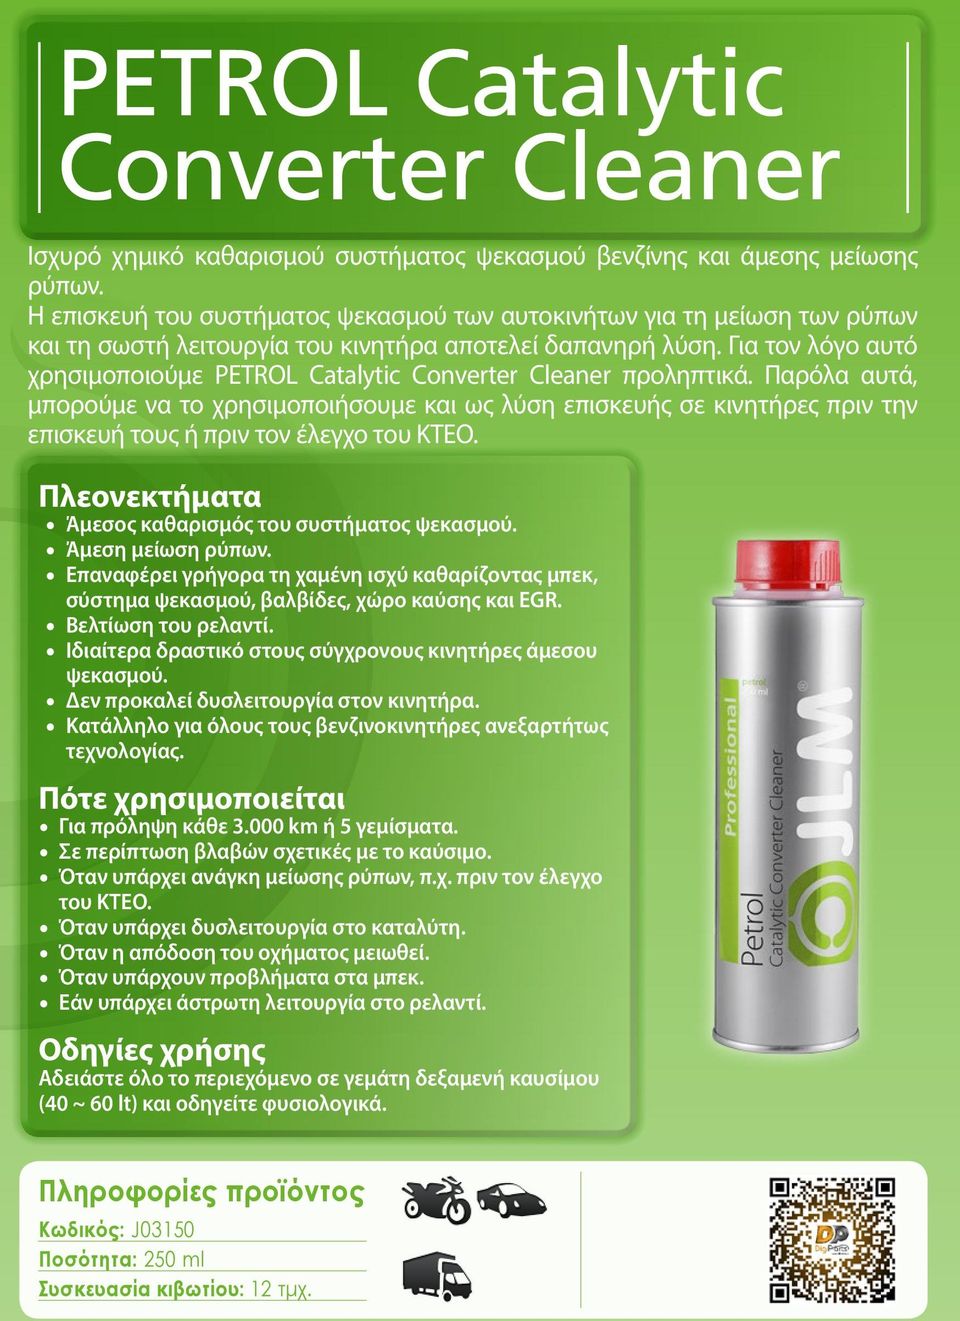 Για τον λόγο αυτό χρησιμοποιούμε PETROL Catalytic Converter Cleaner προληπτικά.